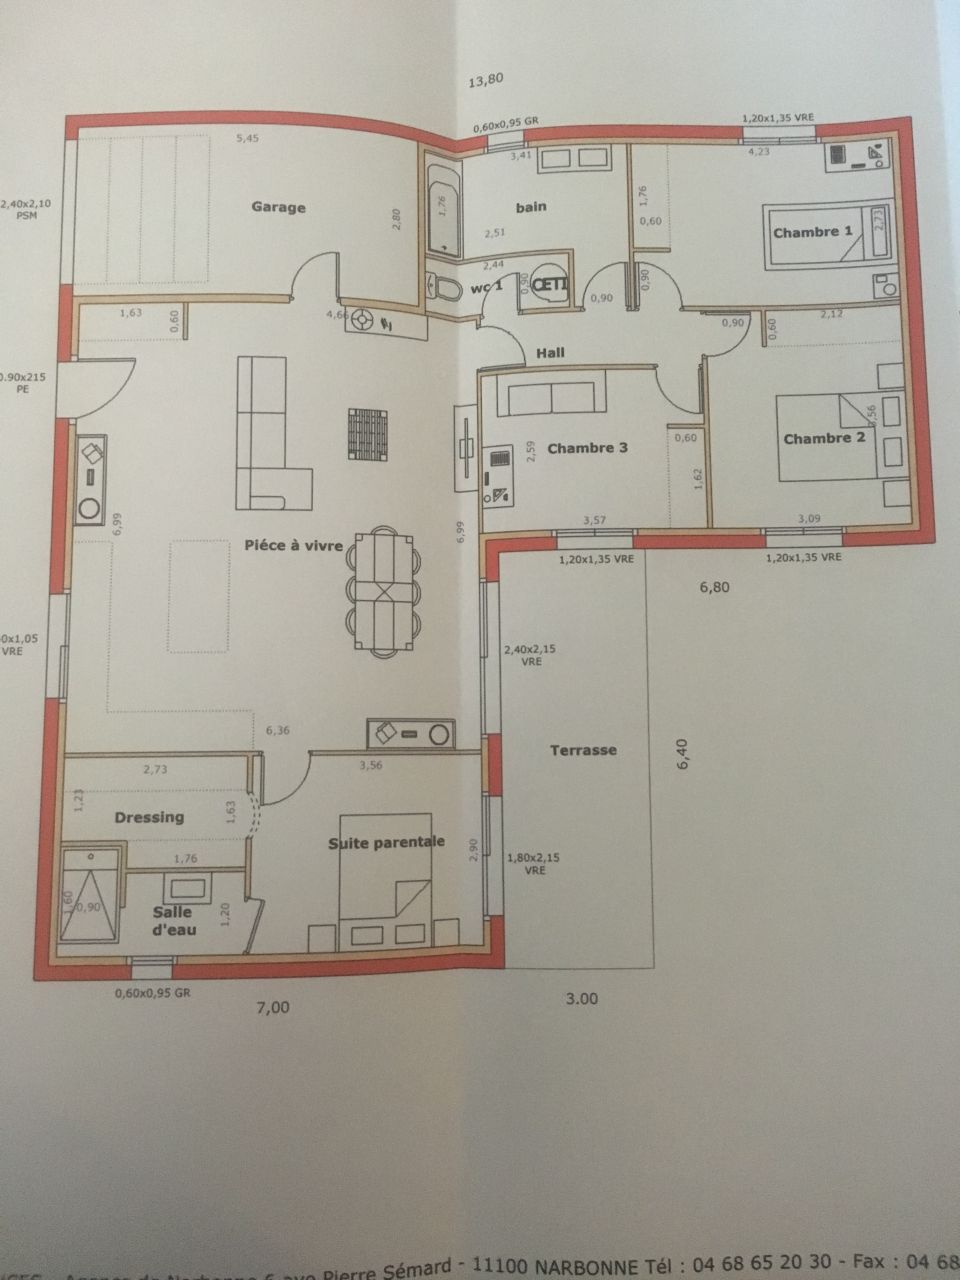 Plan de notre future maison lors de la signature du CCMI
<br />

<br />
Une demande de dcalage des 2 portes intrieures du garage et cuisine sont en cours de modifications